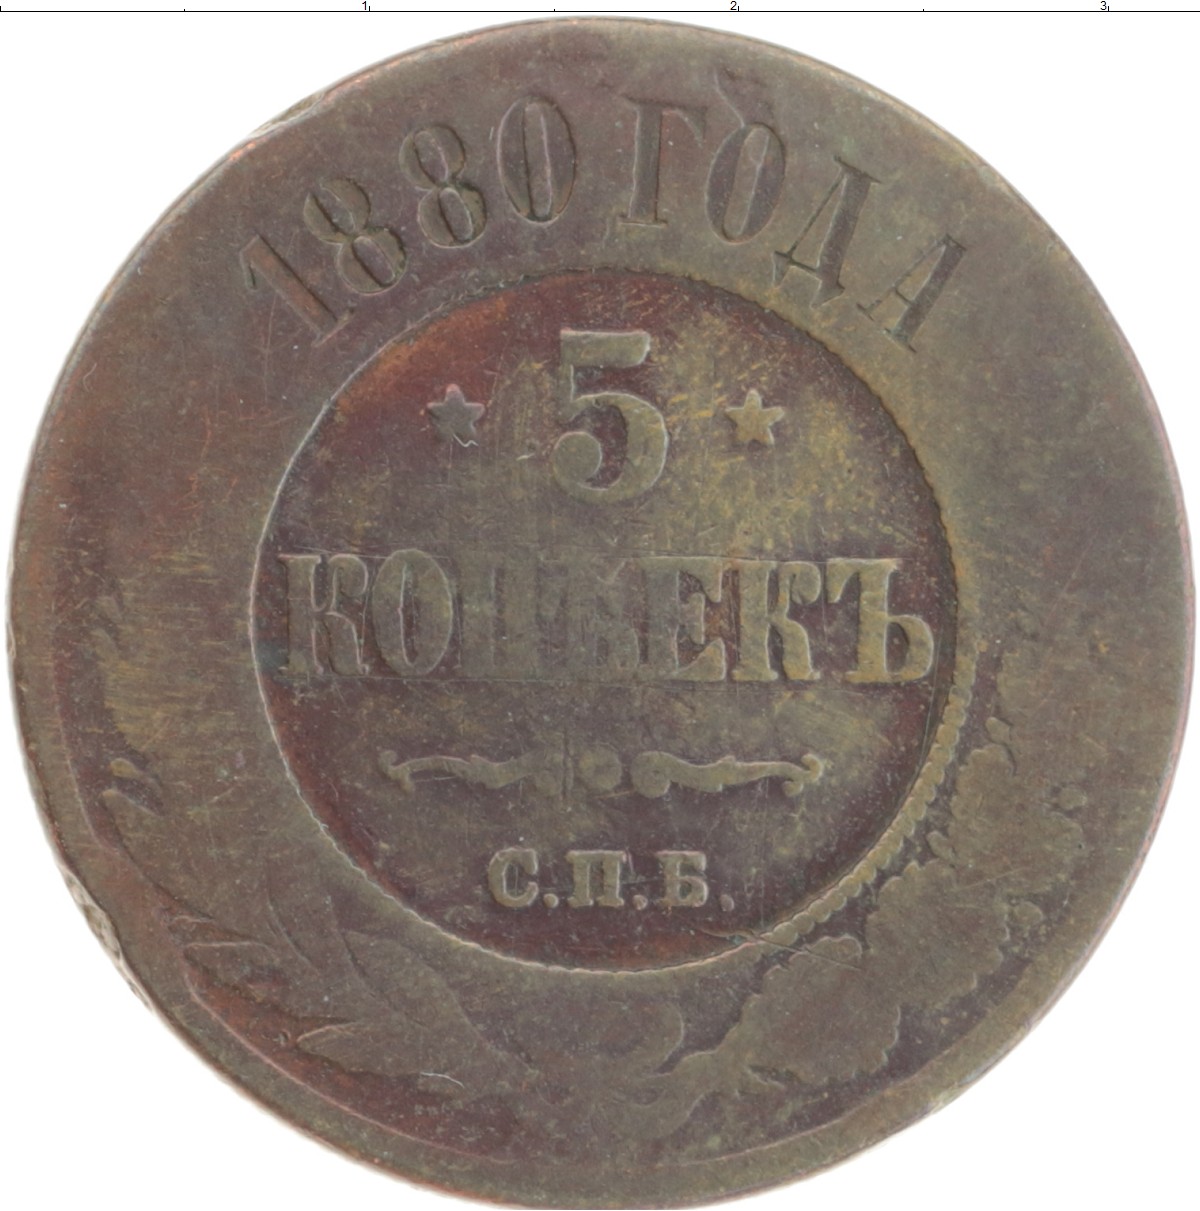 5 копеек 1880. Польская монета 1855 года. Цены 1880 года. Сколько стоит 5 копеек 1880 года медная цена.